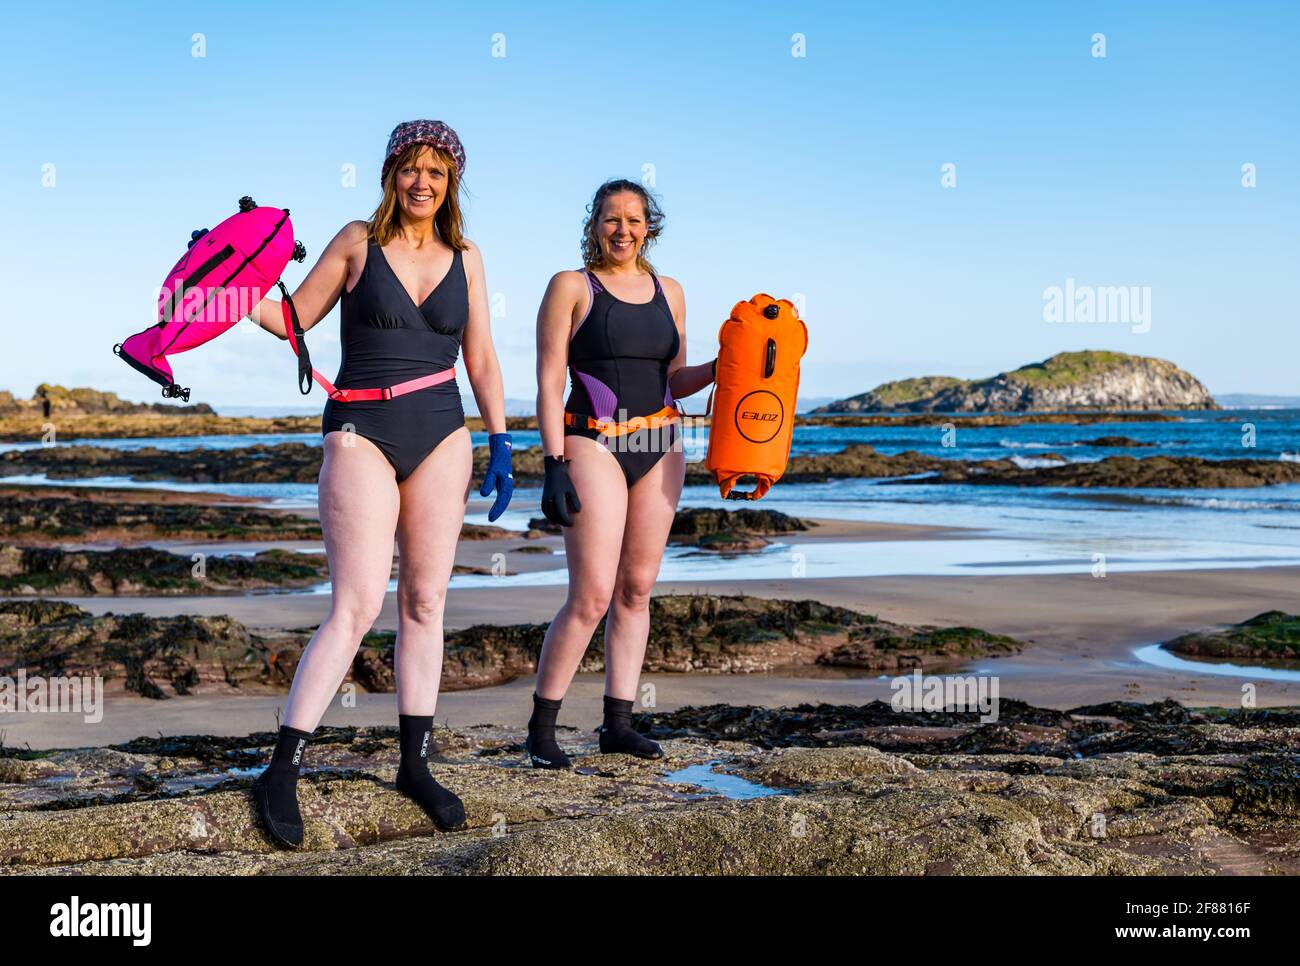 Zwei Frauen, die an einem sonnigen Tag im Freien oder im Freien schwimmen, in Badeanzügen mit Schwimmern am Strand, North Berwick, Firth of Forth, Schottland, Großbritannien Stockfoto